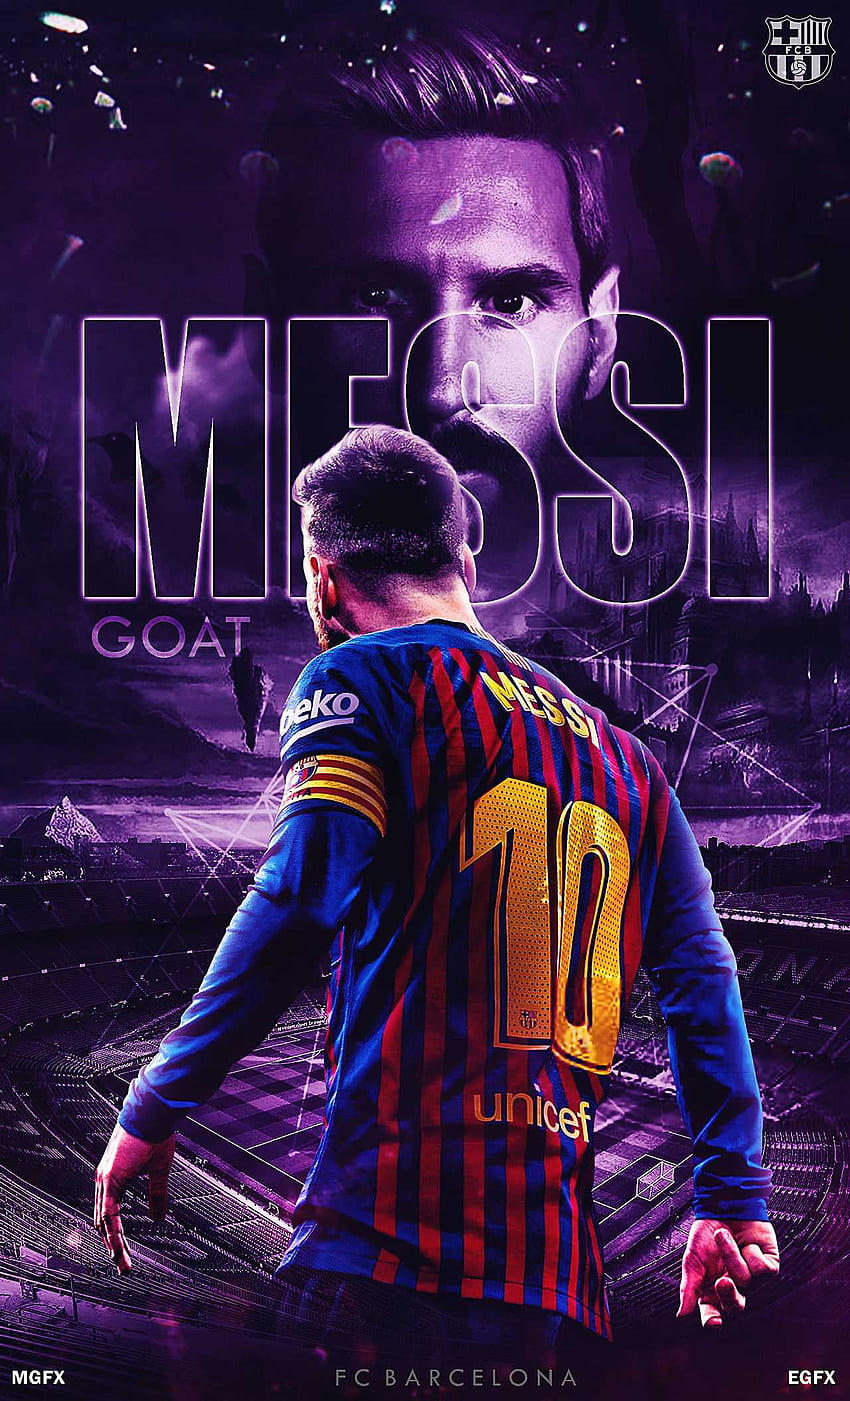 Messi HD Wallpaper: Khám phá những bức hình nền Messi HD đầy sắc nét để cảm nhận được vẻ đẹp tuyệt vời của anh. Bạn sẽ không thể cưỡng lại được sức hút của những bức hình ảnh này và sẽ muốn sở hữu ngay từ lần đầu tiên chúng được xuất hiện trước mắt bạn.